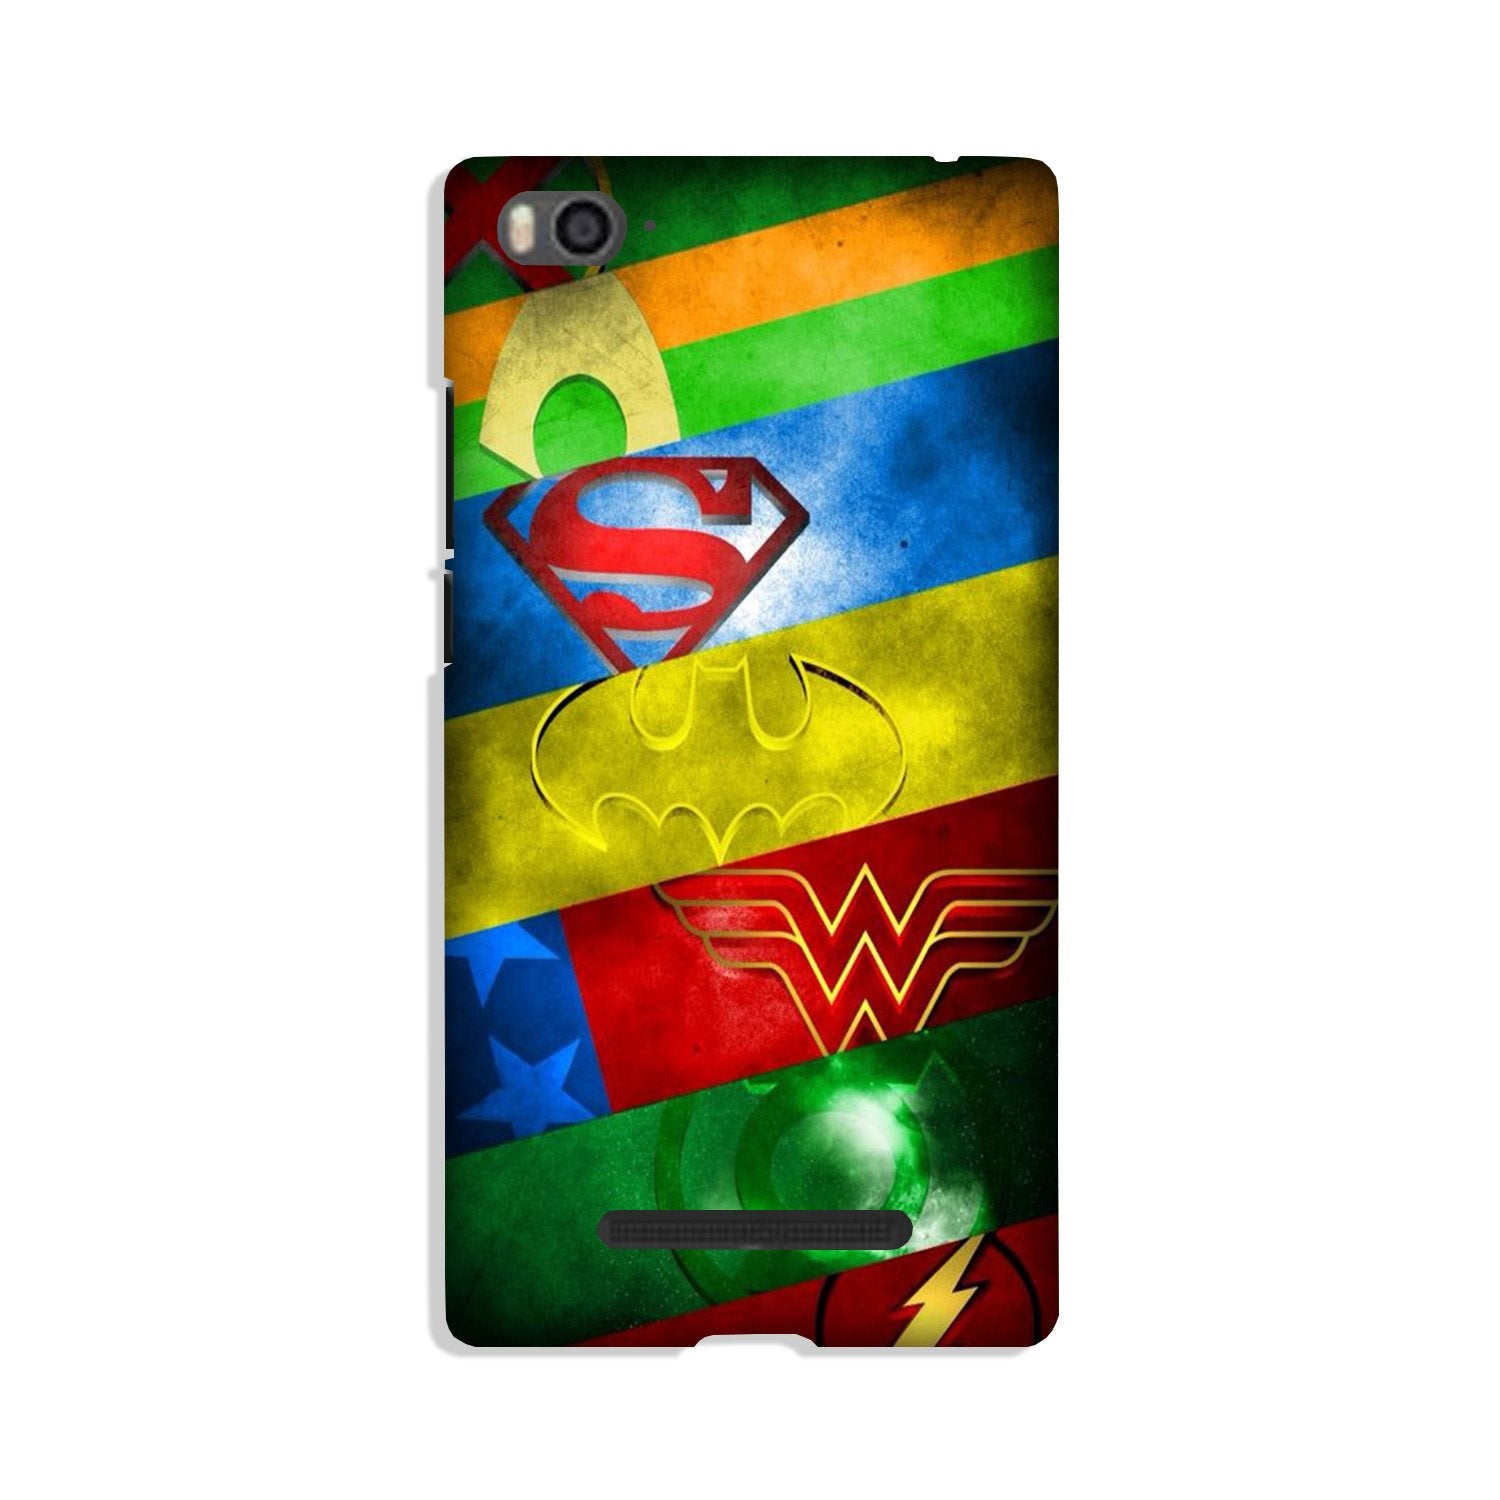 Superheros Logo Case for Xiaomi Redmi 5A (Design No. 251)